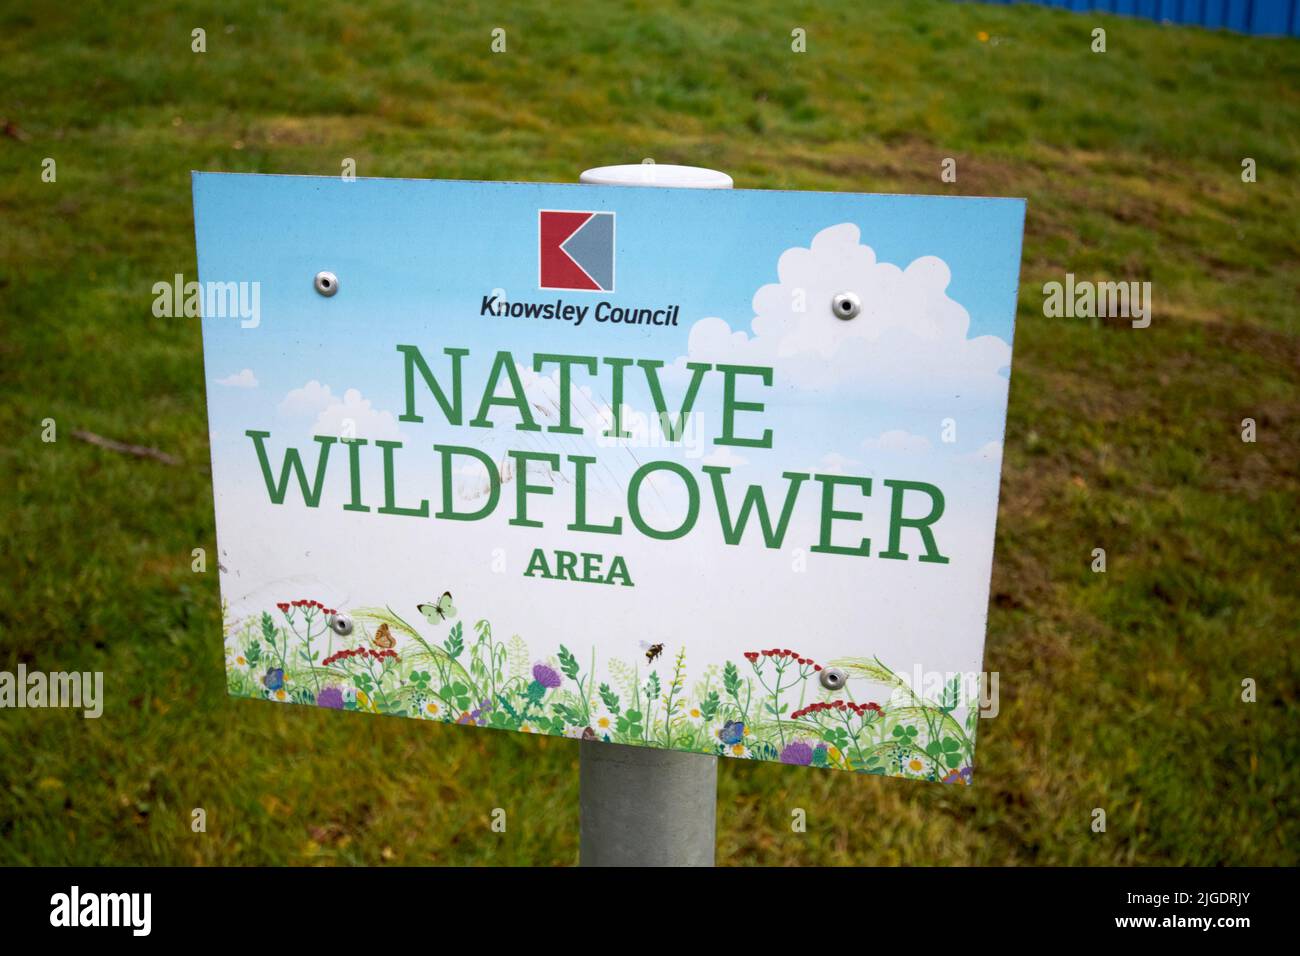 knowsley council area riservata di terreno pubblico aperto cucito con semi di fiori selvatici nativi come area protetta per api e fauna selvatica Foto Stock